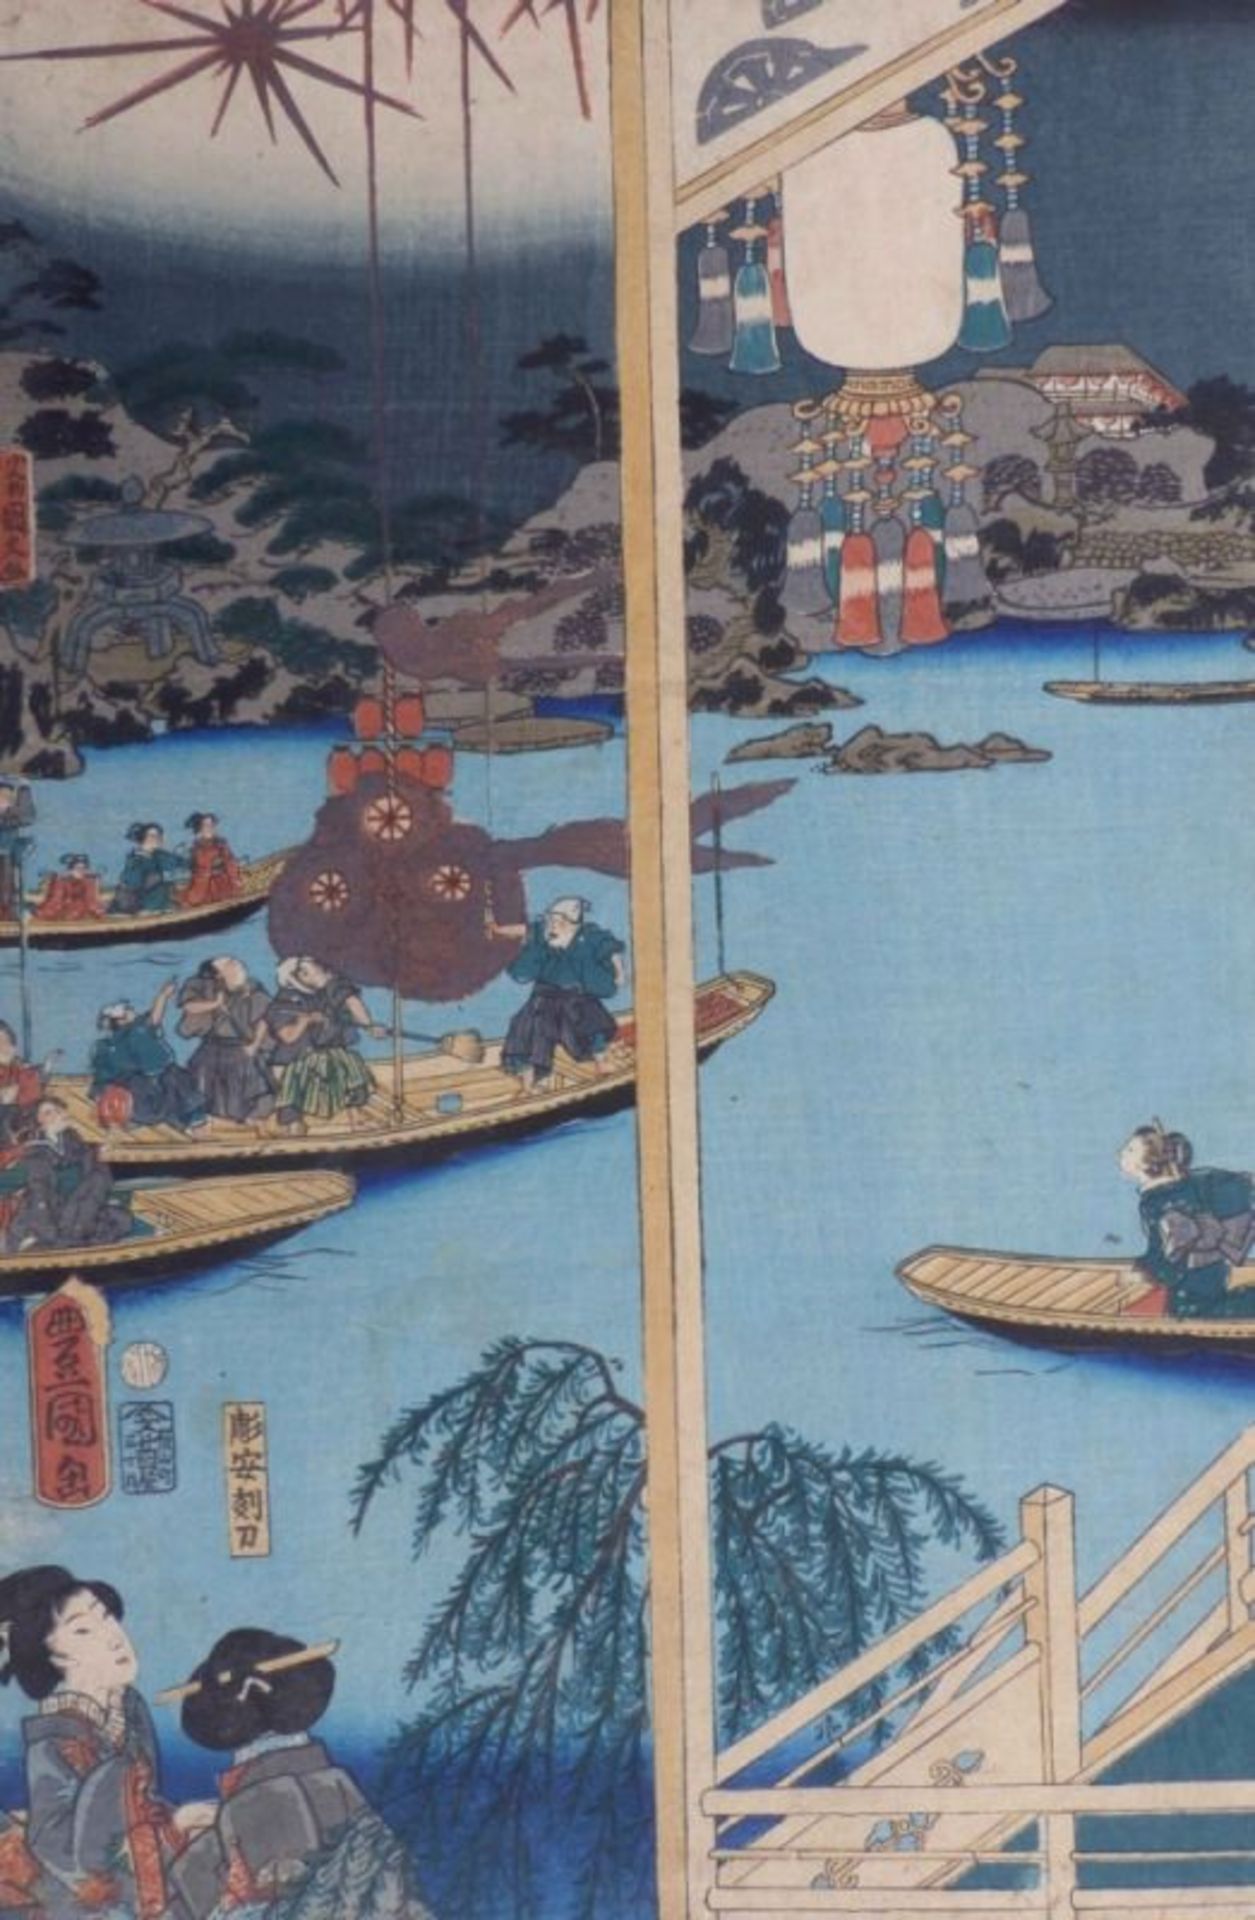 Utagawa Kunisada (Toyokuni III.)